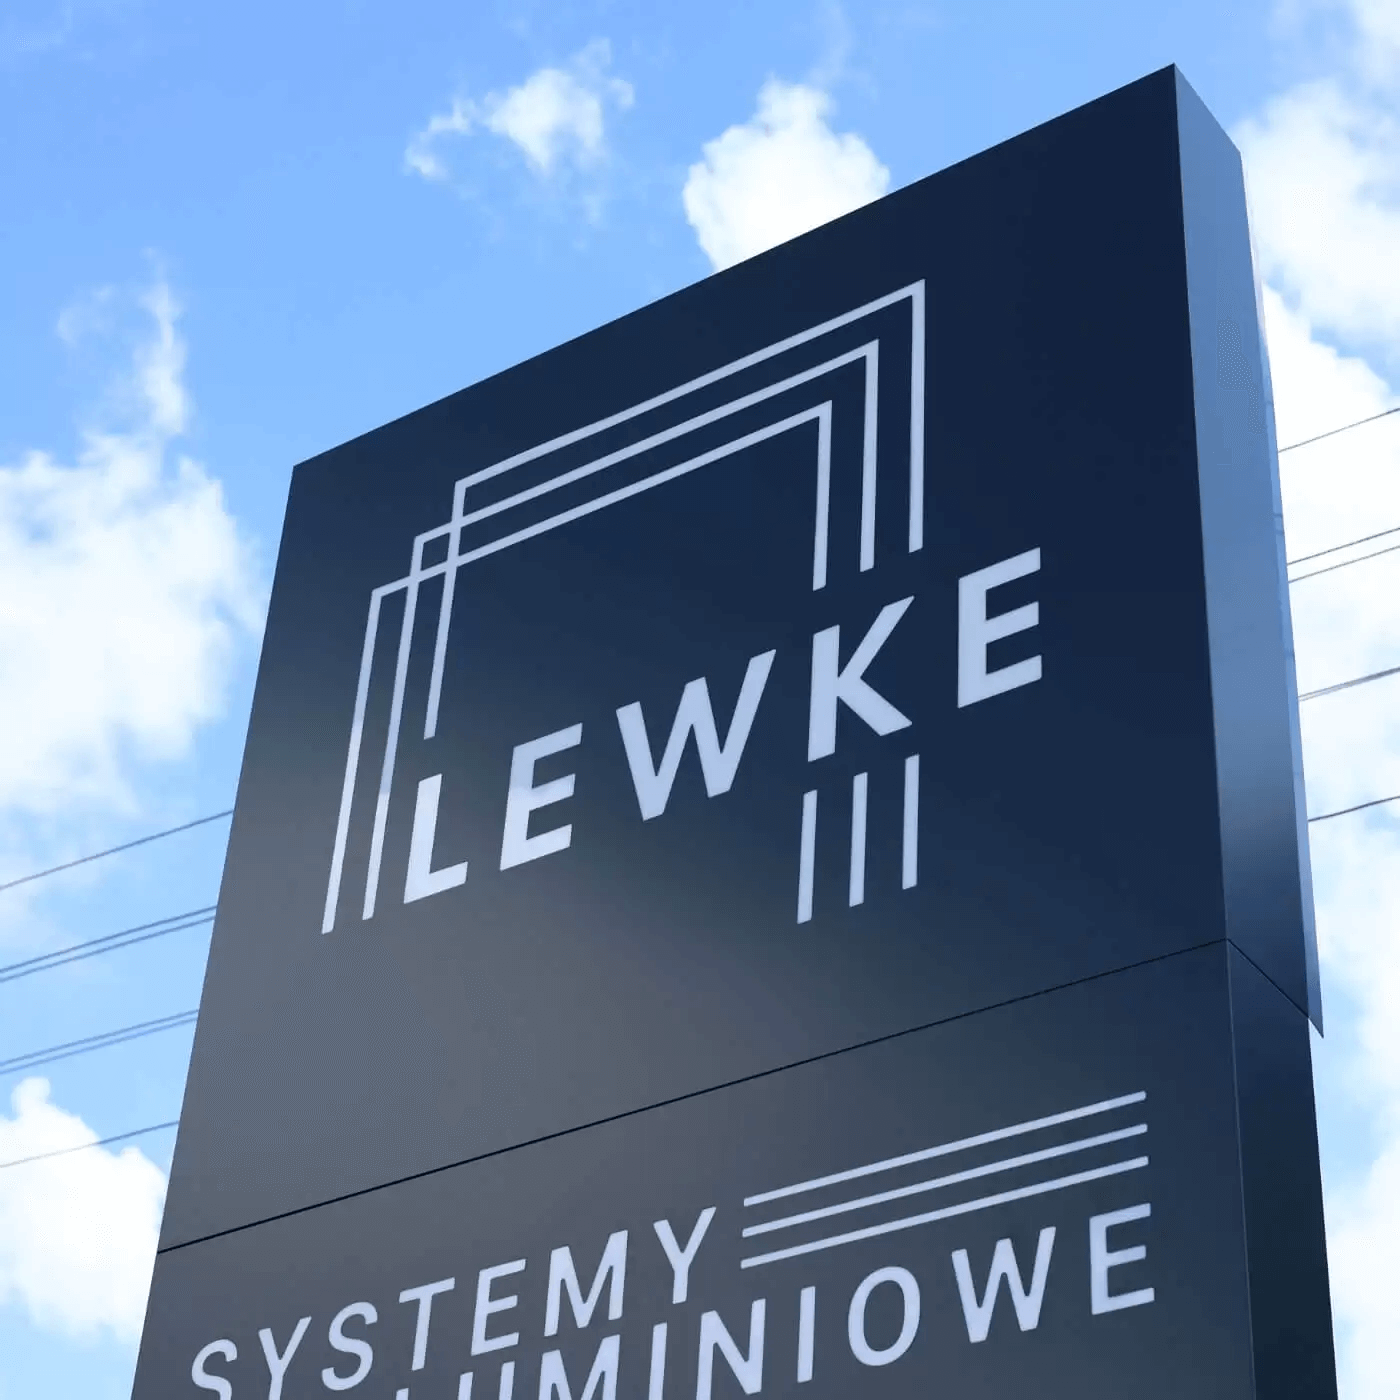 lewke logo pylon